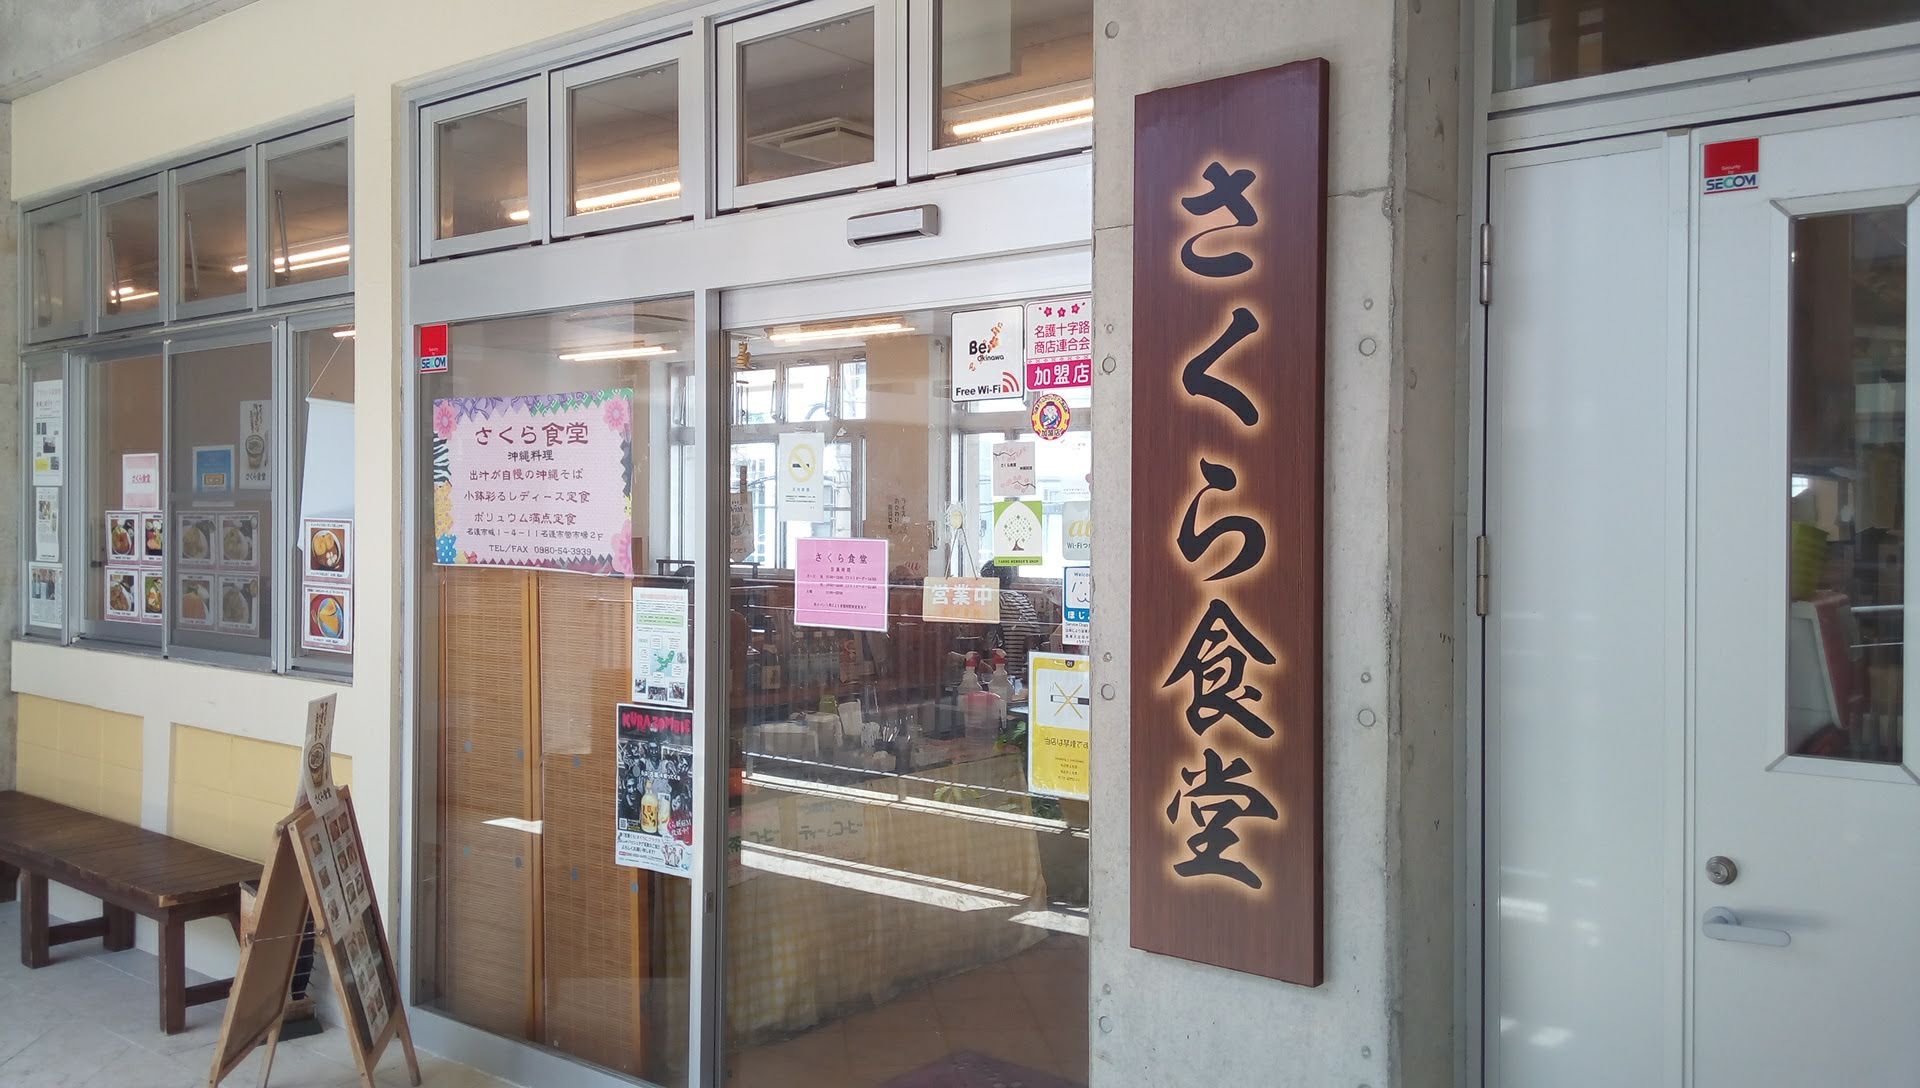 Okinawa soba full of stamina that can be eaten in Nago municipal market, Sakura dining room